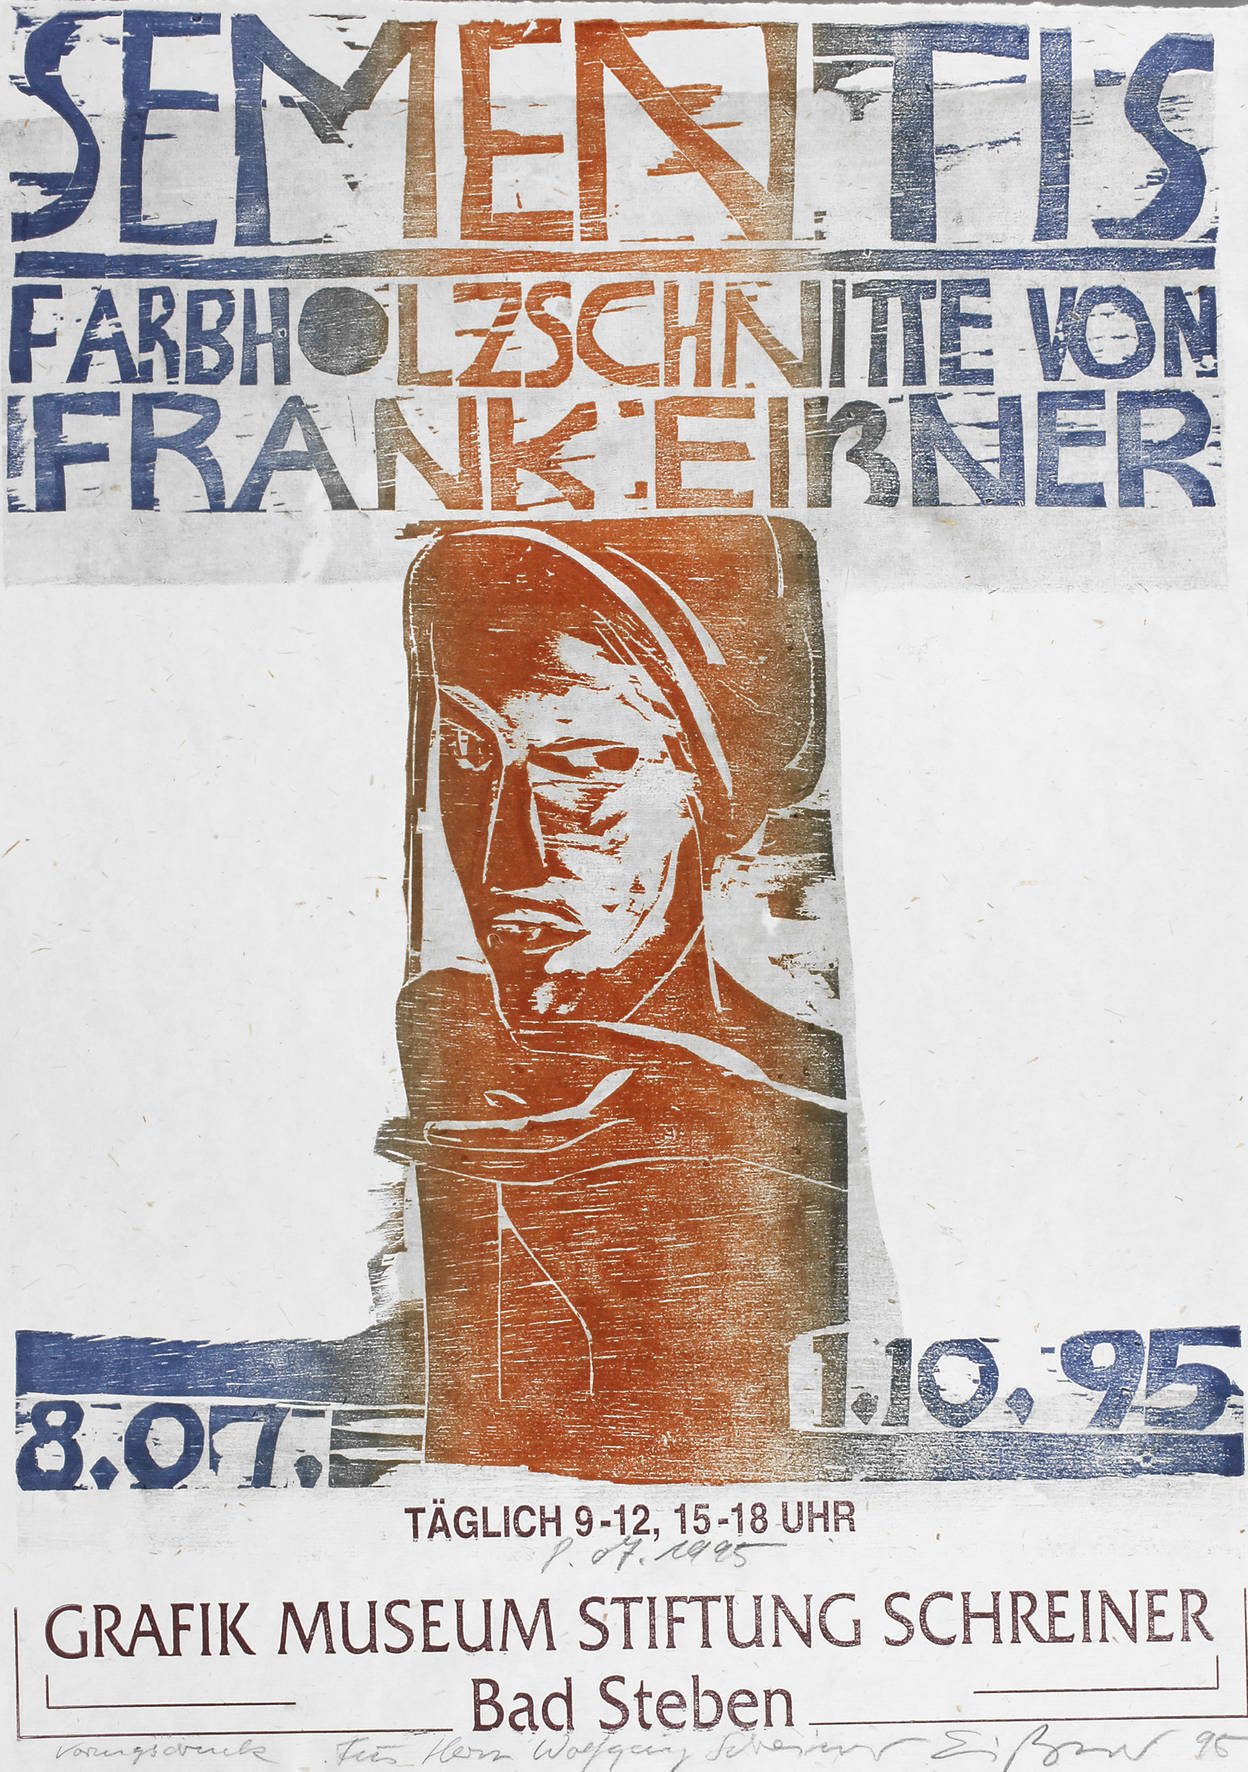 Frank Eißner, ”Sementis”